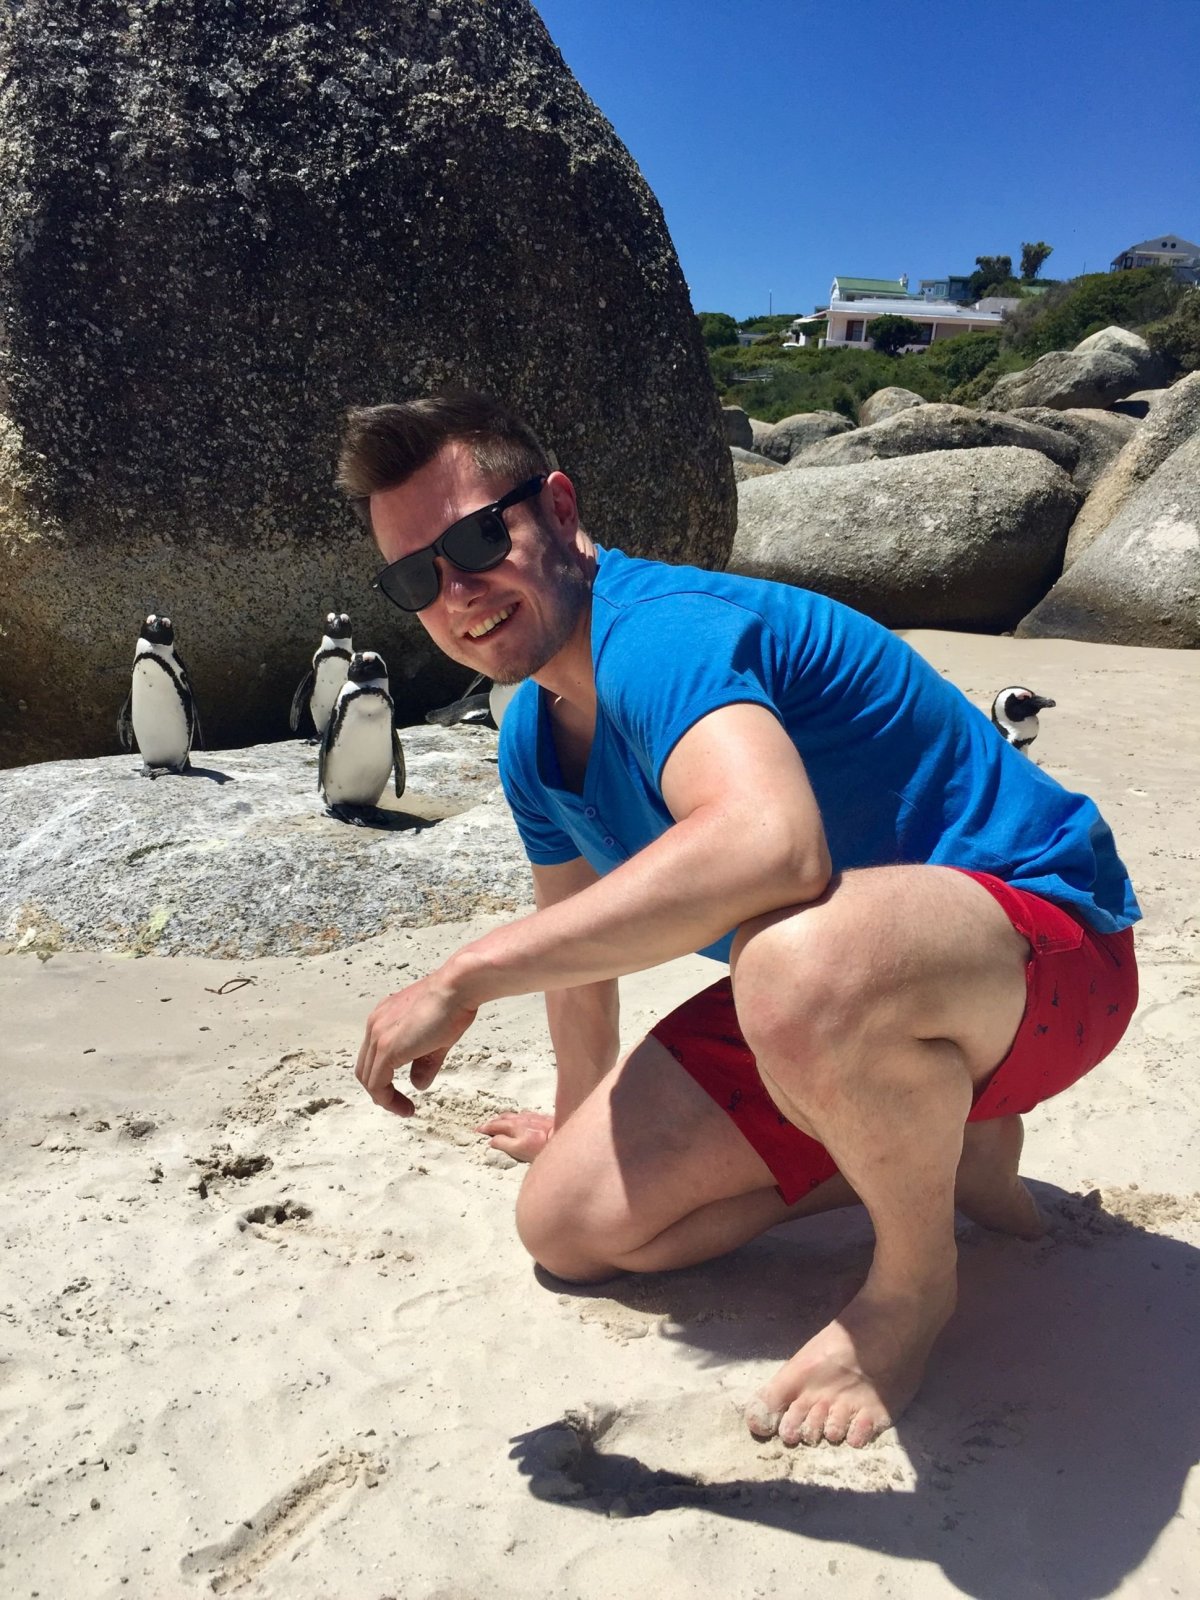 po chvilce chůze vodou jste z veřejné pláže sami přímo mezi tučňáky